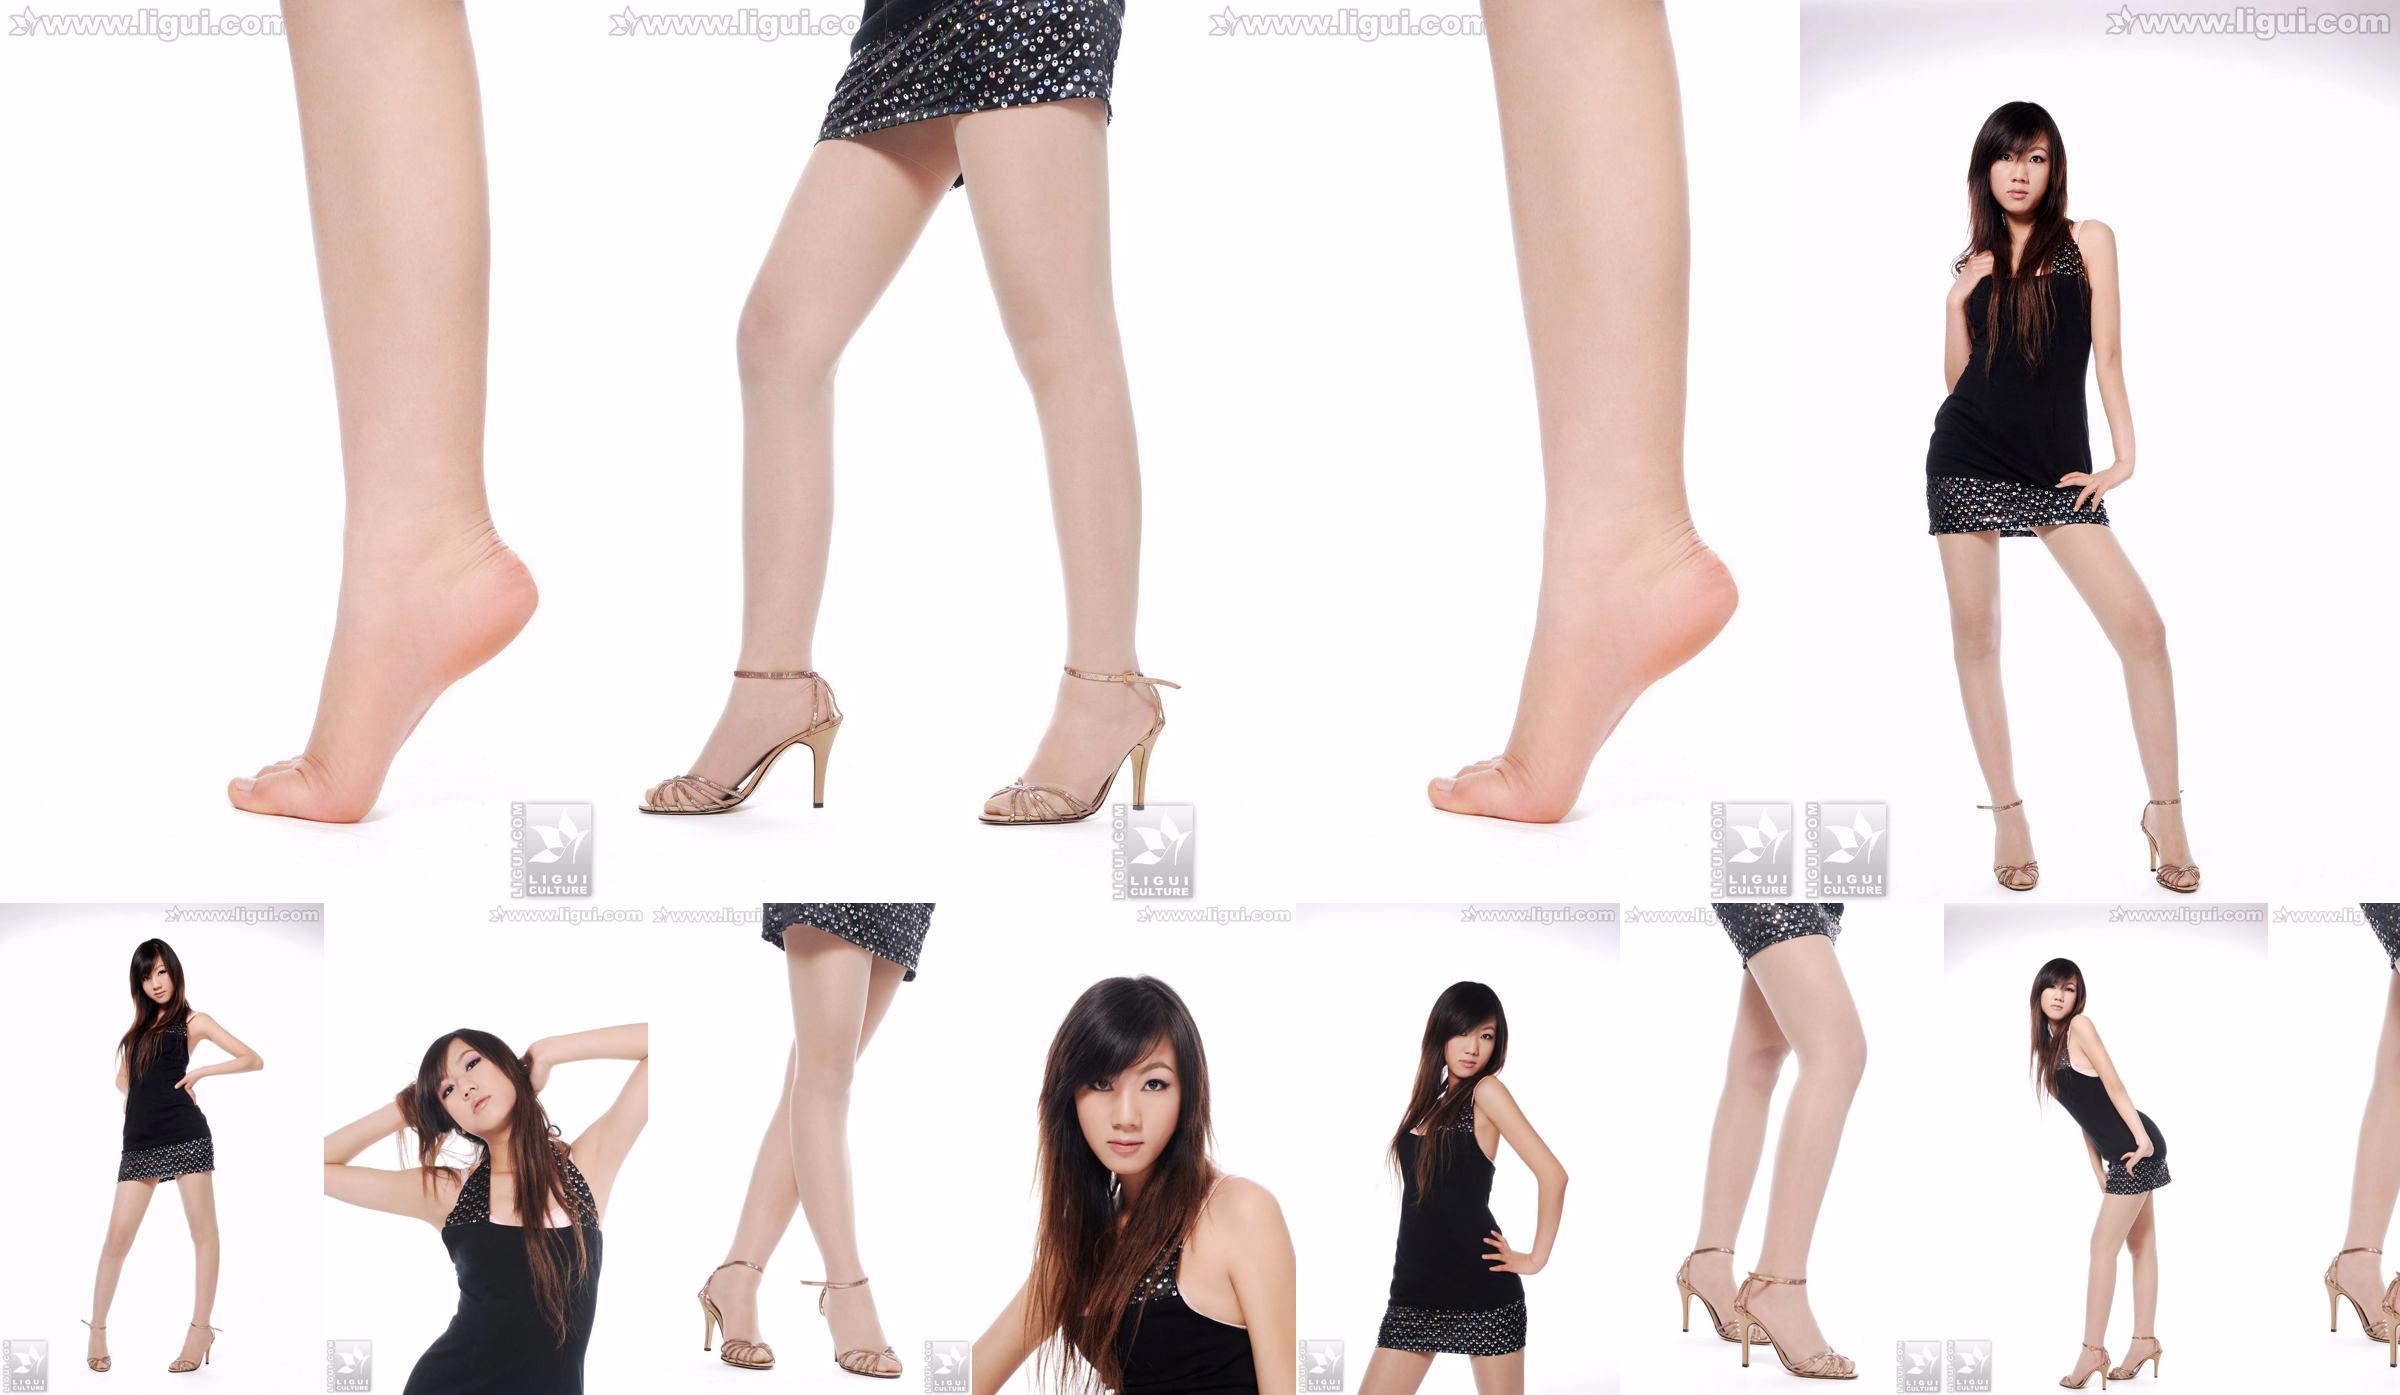 Modell Sheng Chao "Hochhackiger Jadefuß Schöne Neue Show" [Sheng LiGui] Foto von schönen Beinen und Jadefuß No.c22e7d Seite 1